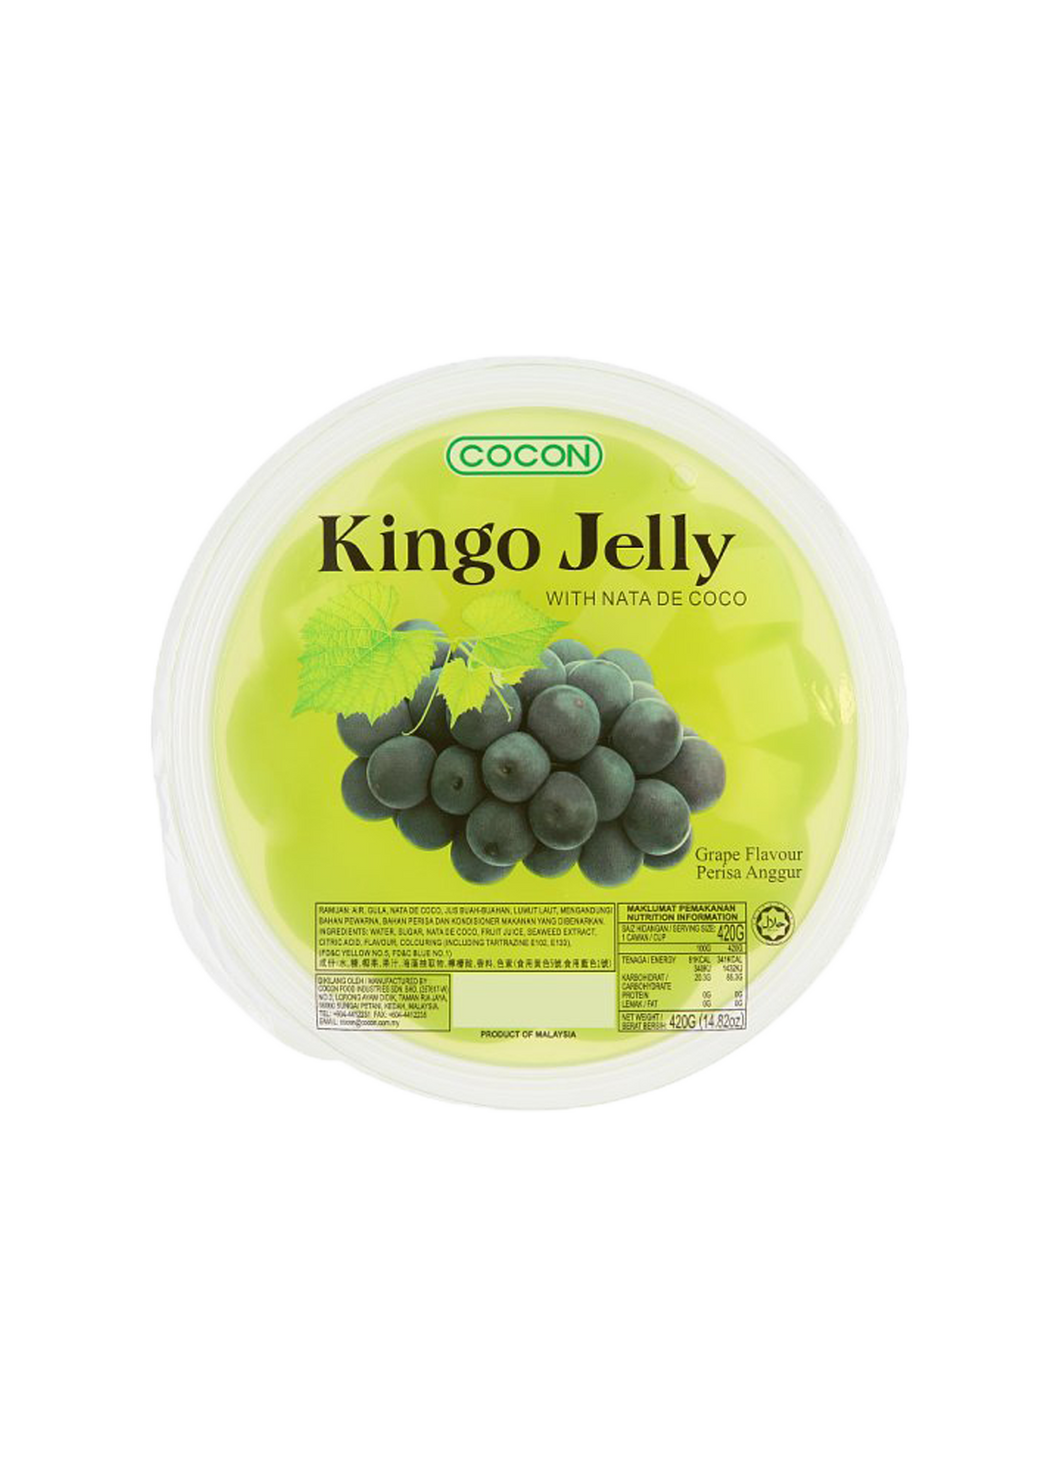 Kingo Jelly with Nata de Coco Grape Flavour 420g